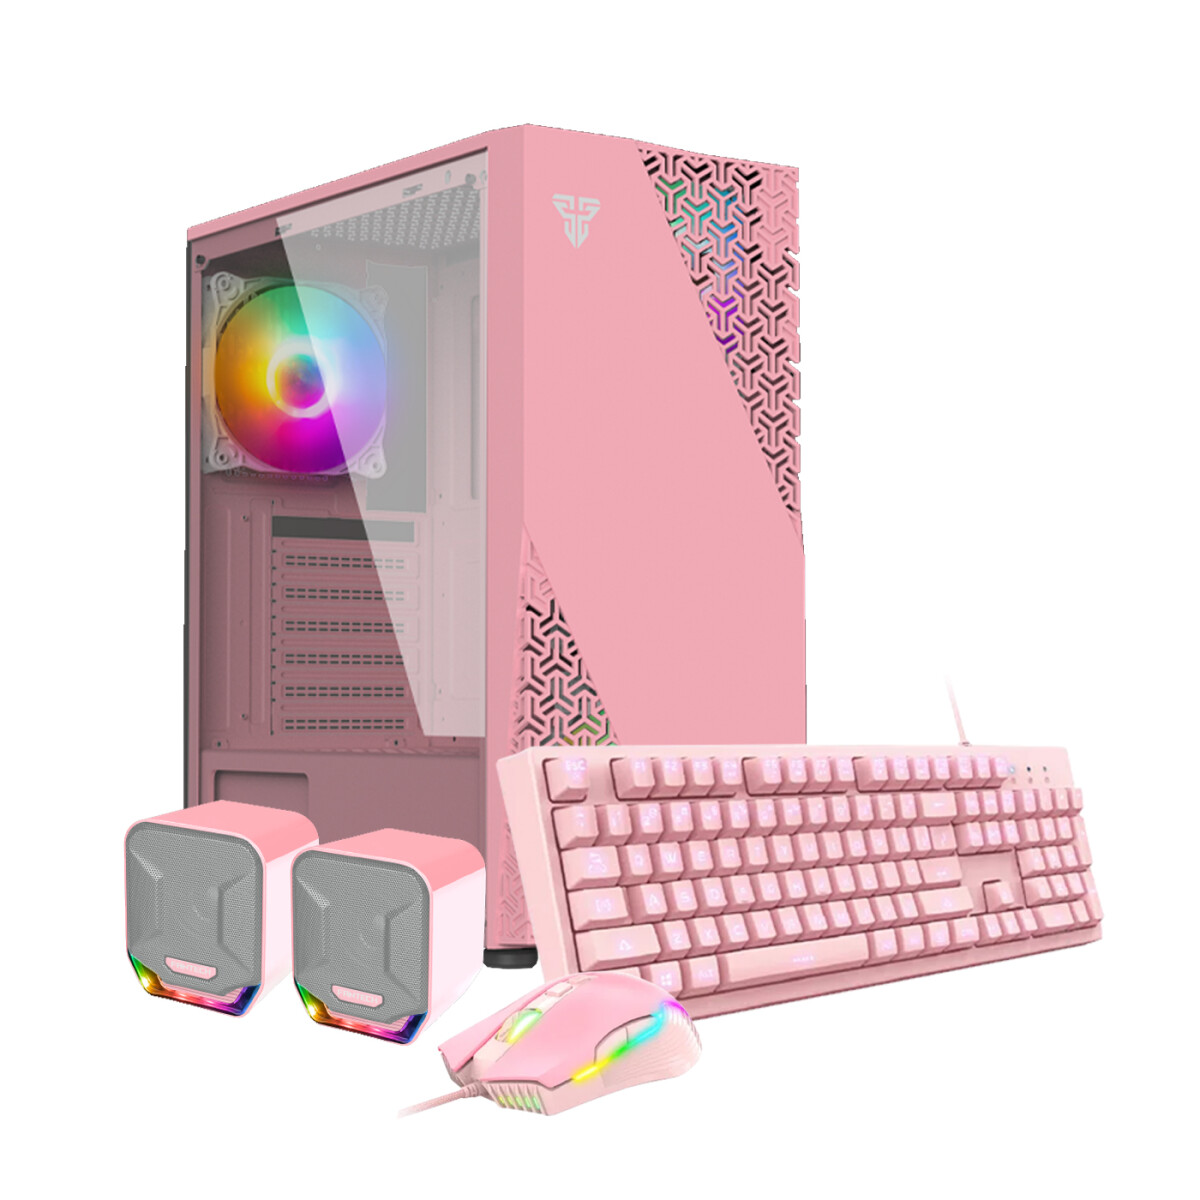 PC GAMER Pink Super Full. Intel i5-11ªGEN. RAM 16GB. Disco Sólido 256GB+D.Duro 500GB. Tarjeta 1650 4GB DDR6 